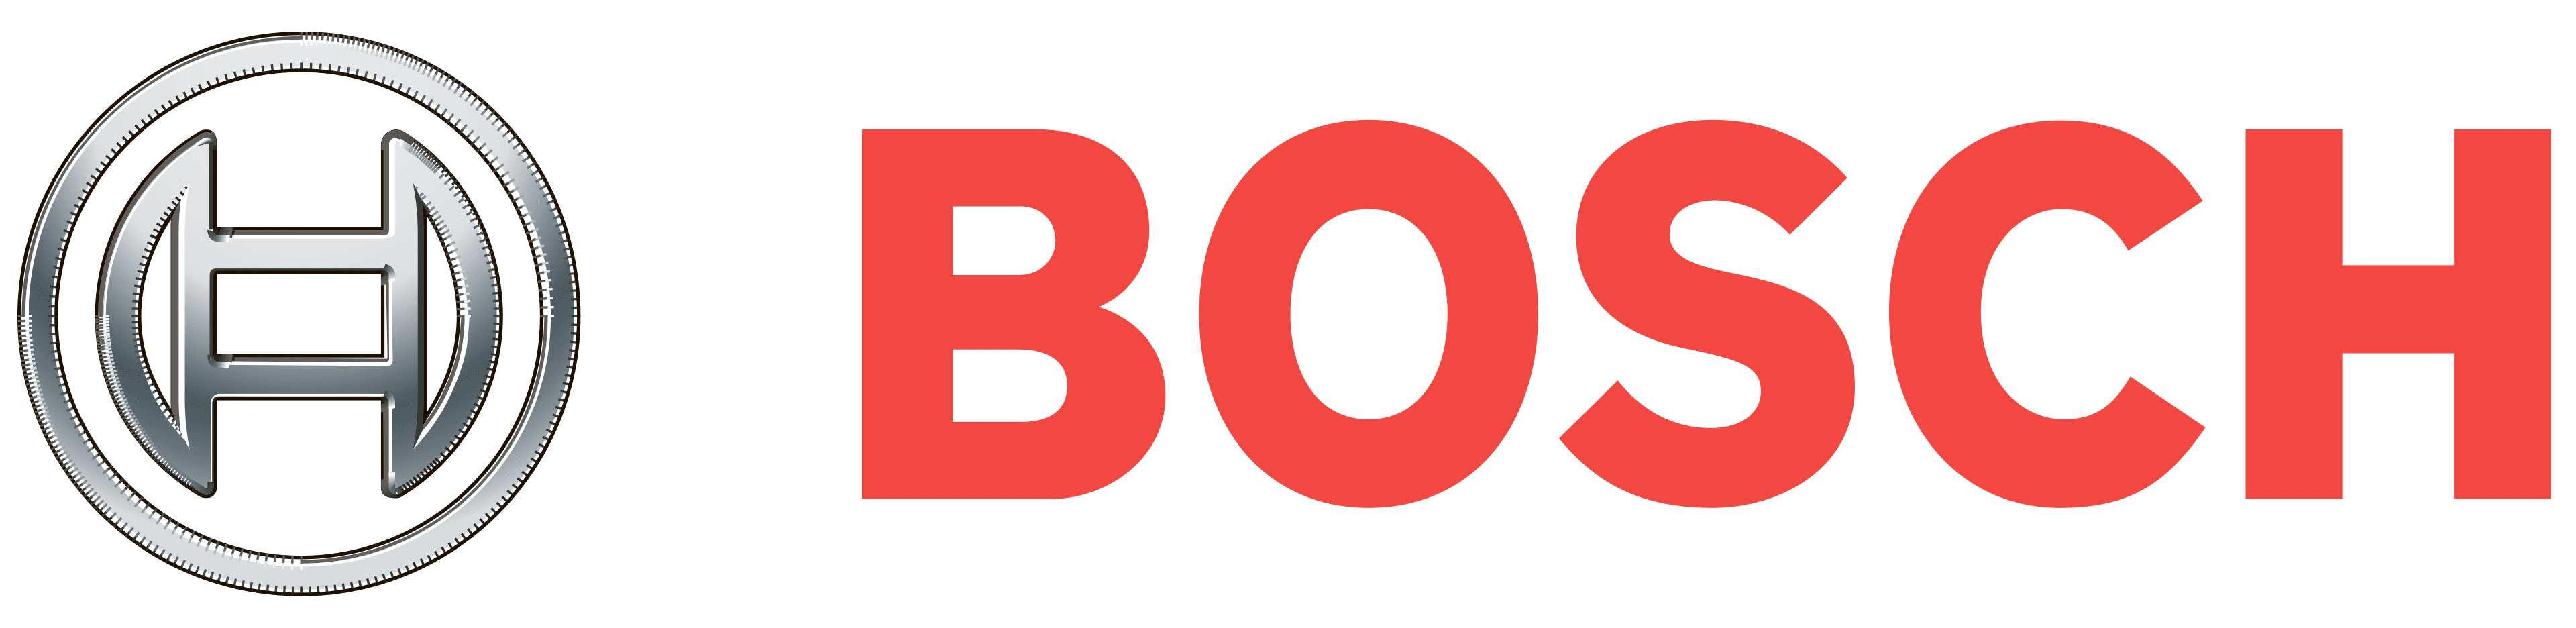 Bosch logo01